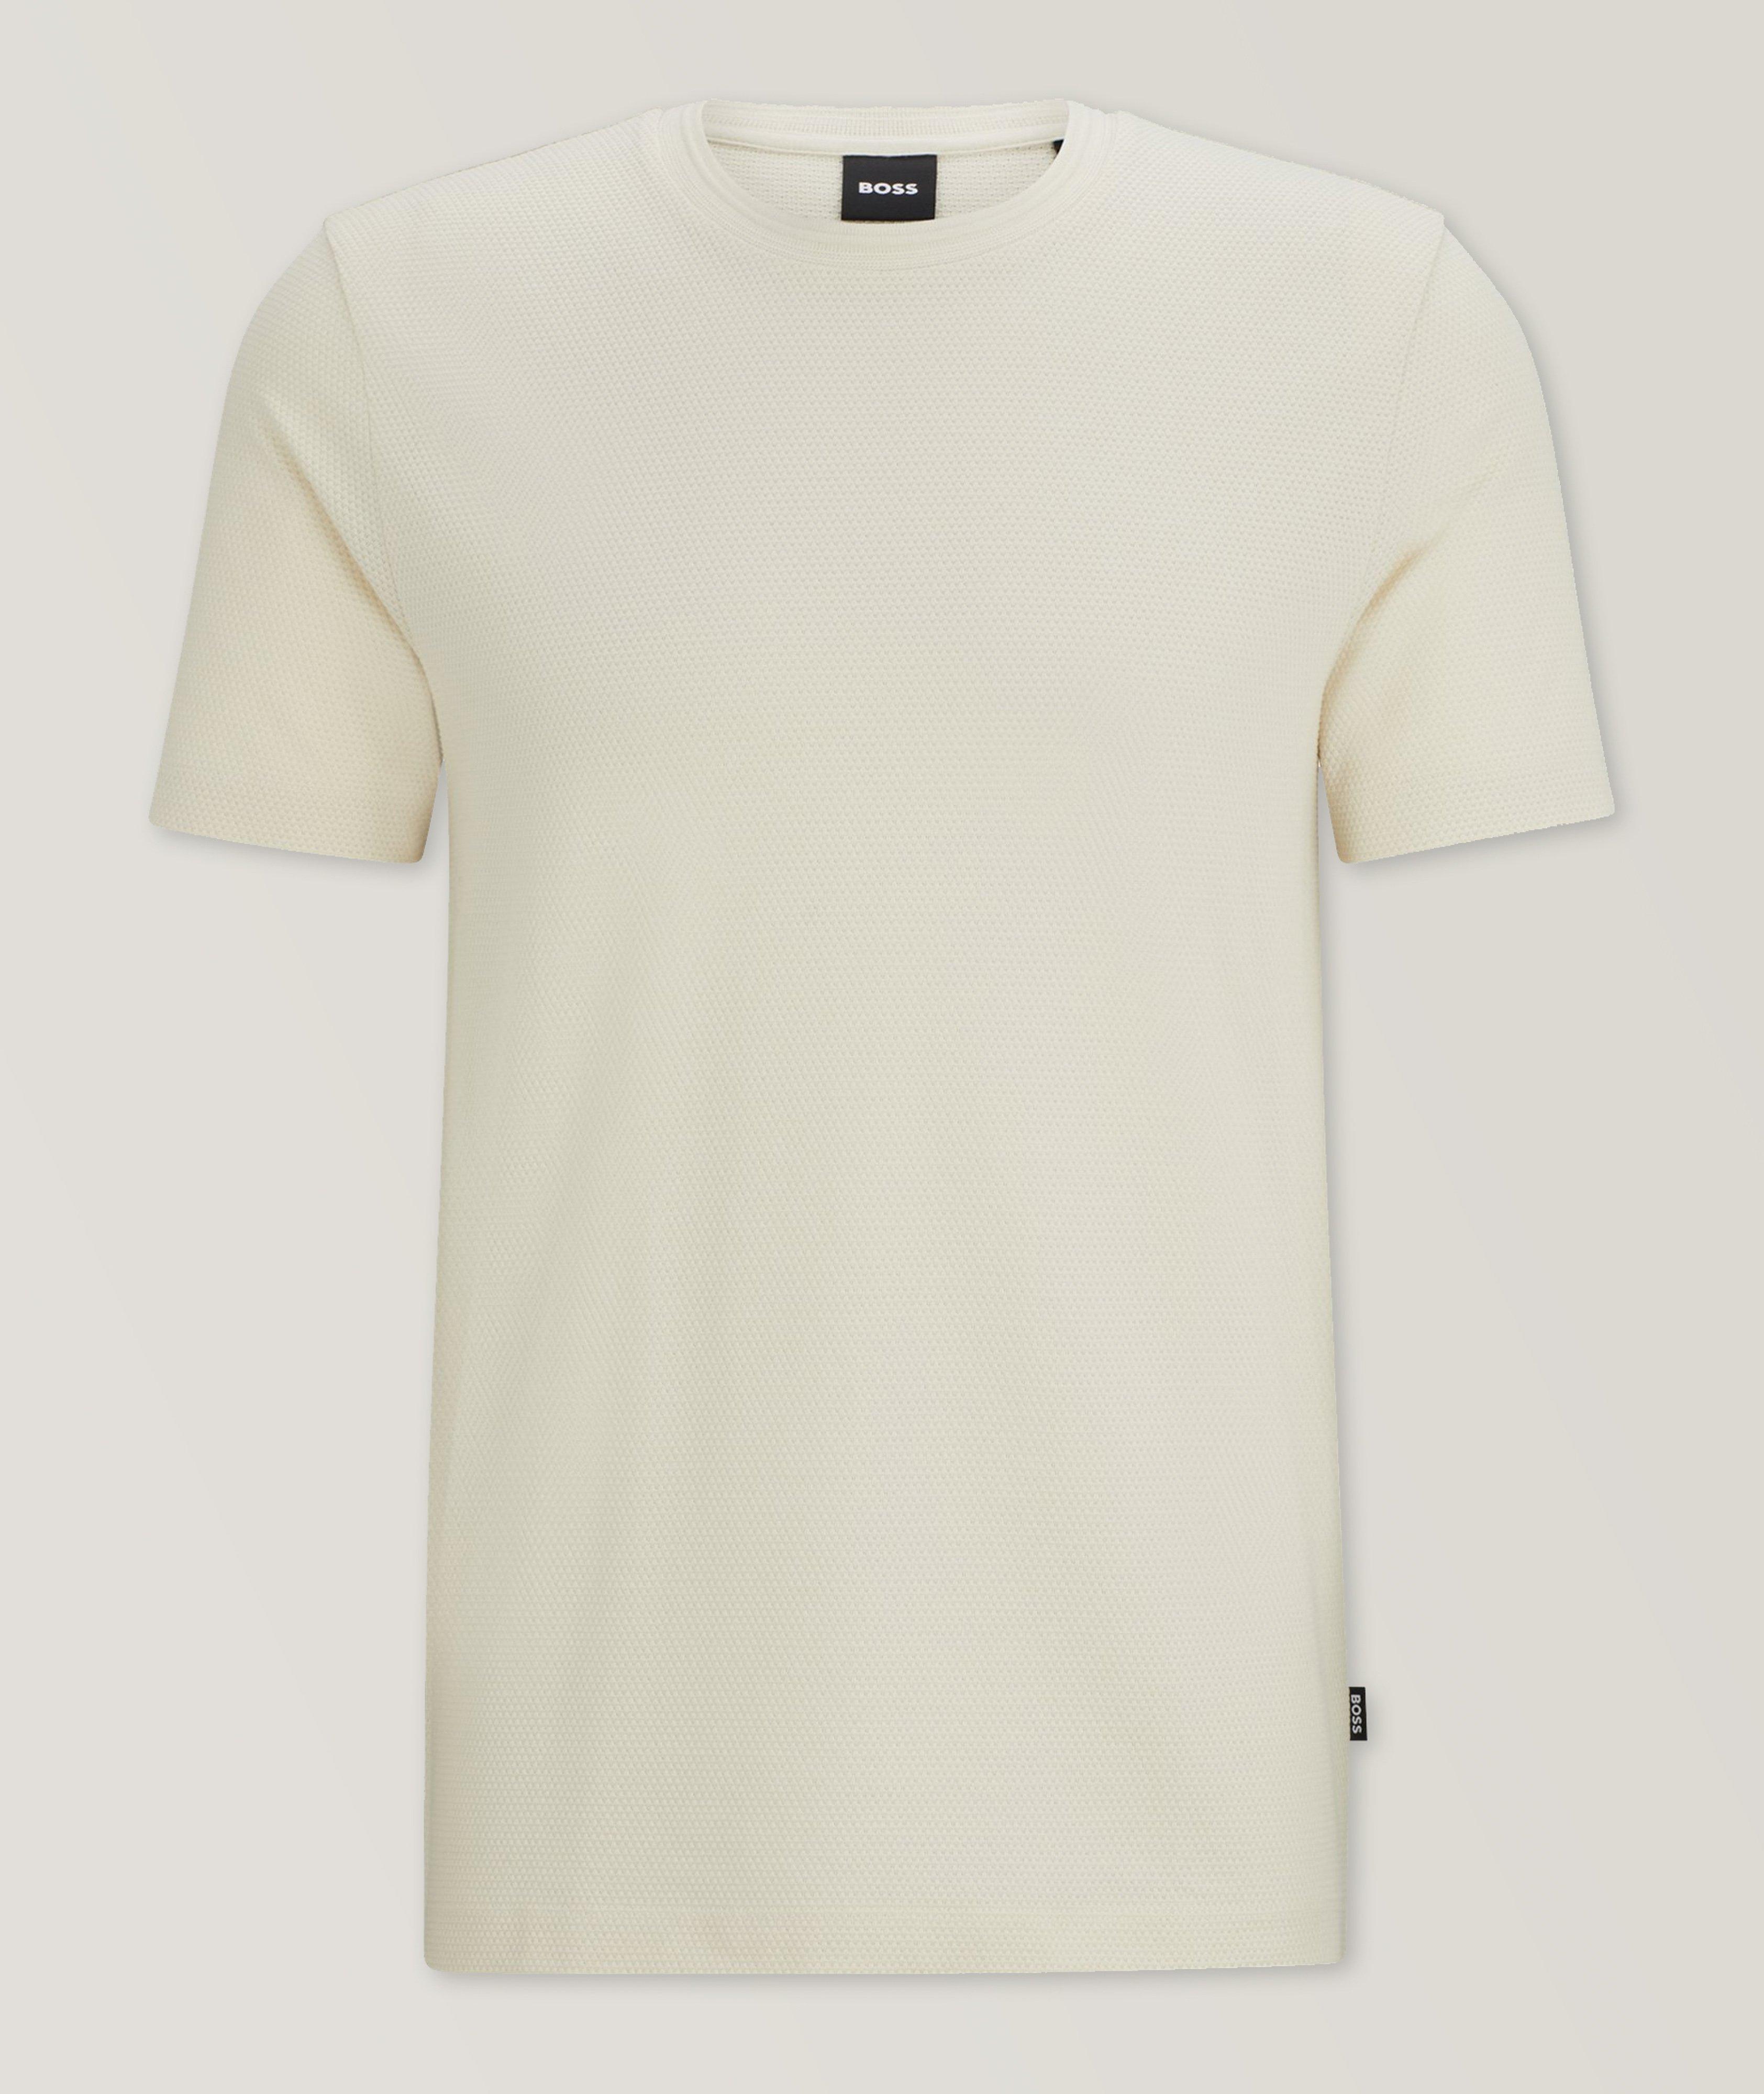 Tiburt Jacquard Cotton-Blend T-Shirt